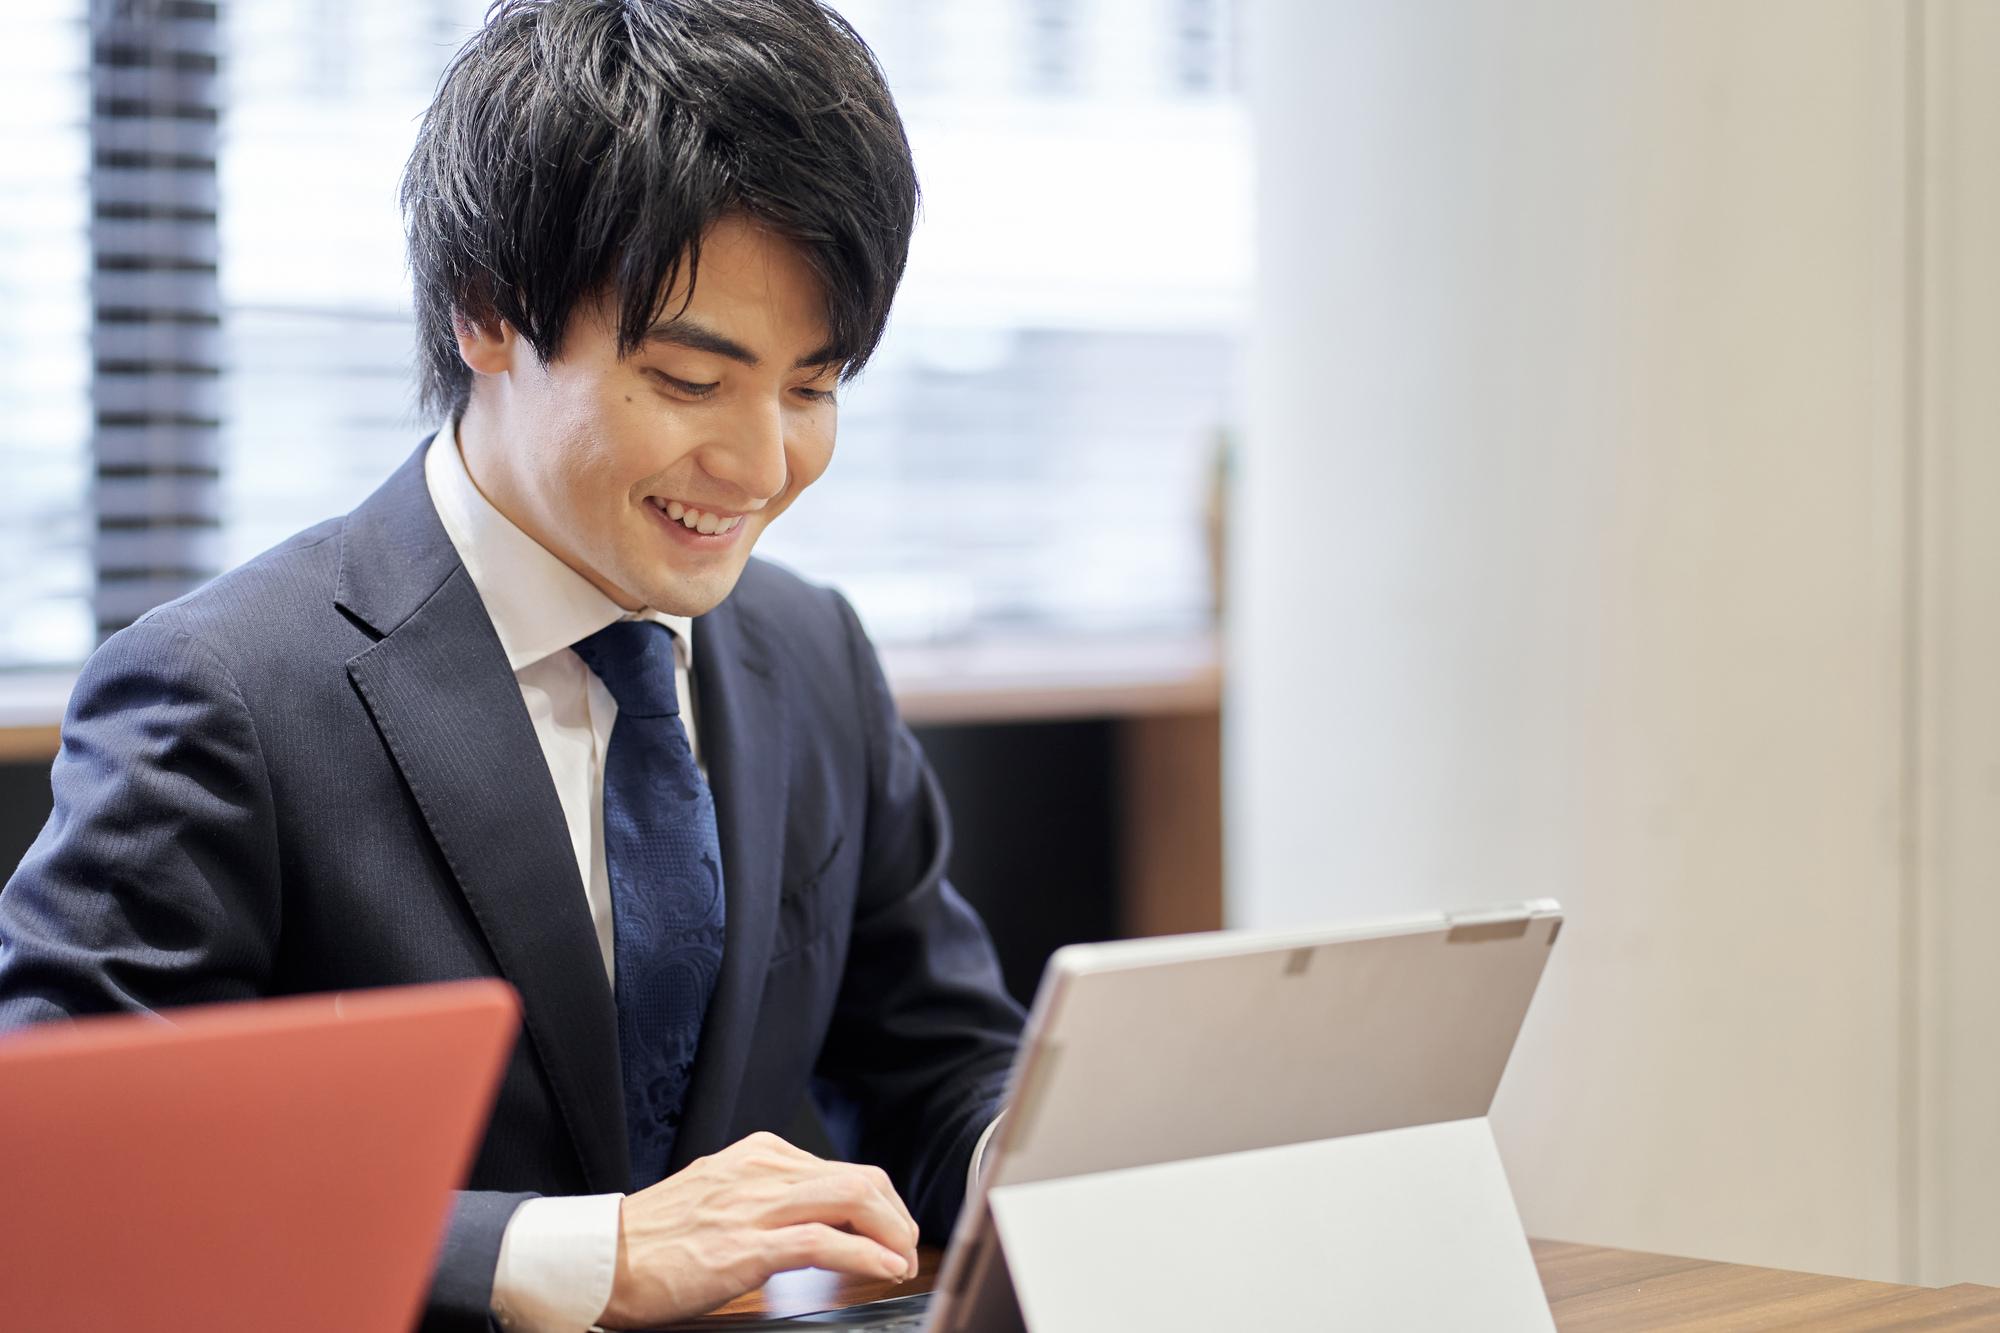 卓上に立てたタブレット型PCのキーボードを笑顔で操作する、スーツ姿の若い男性